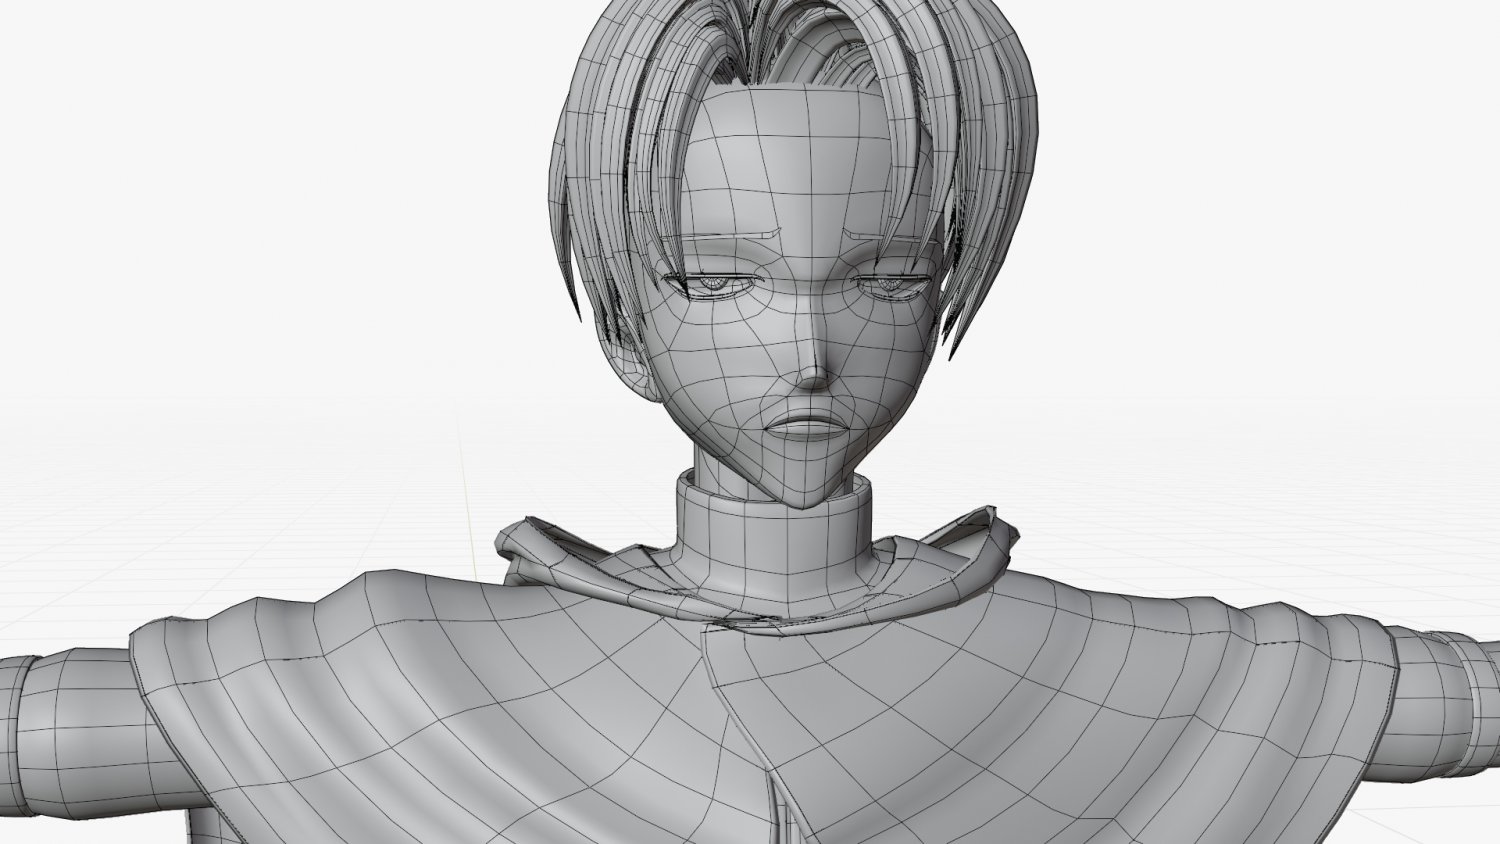 Jaw Titan - Shingeki no Kyojin 3D model 3D printable